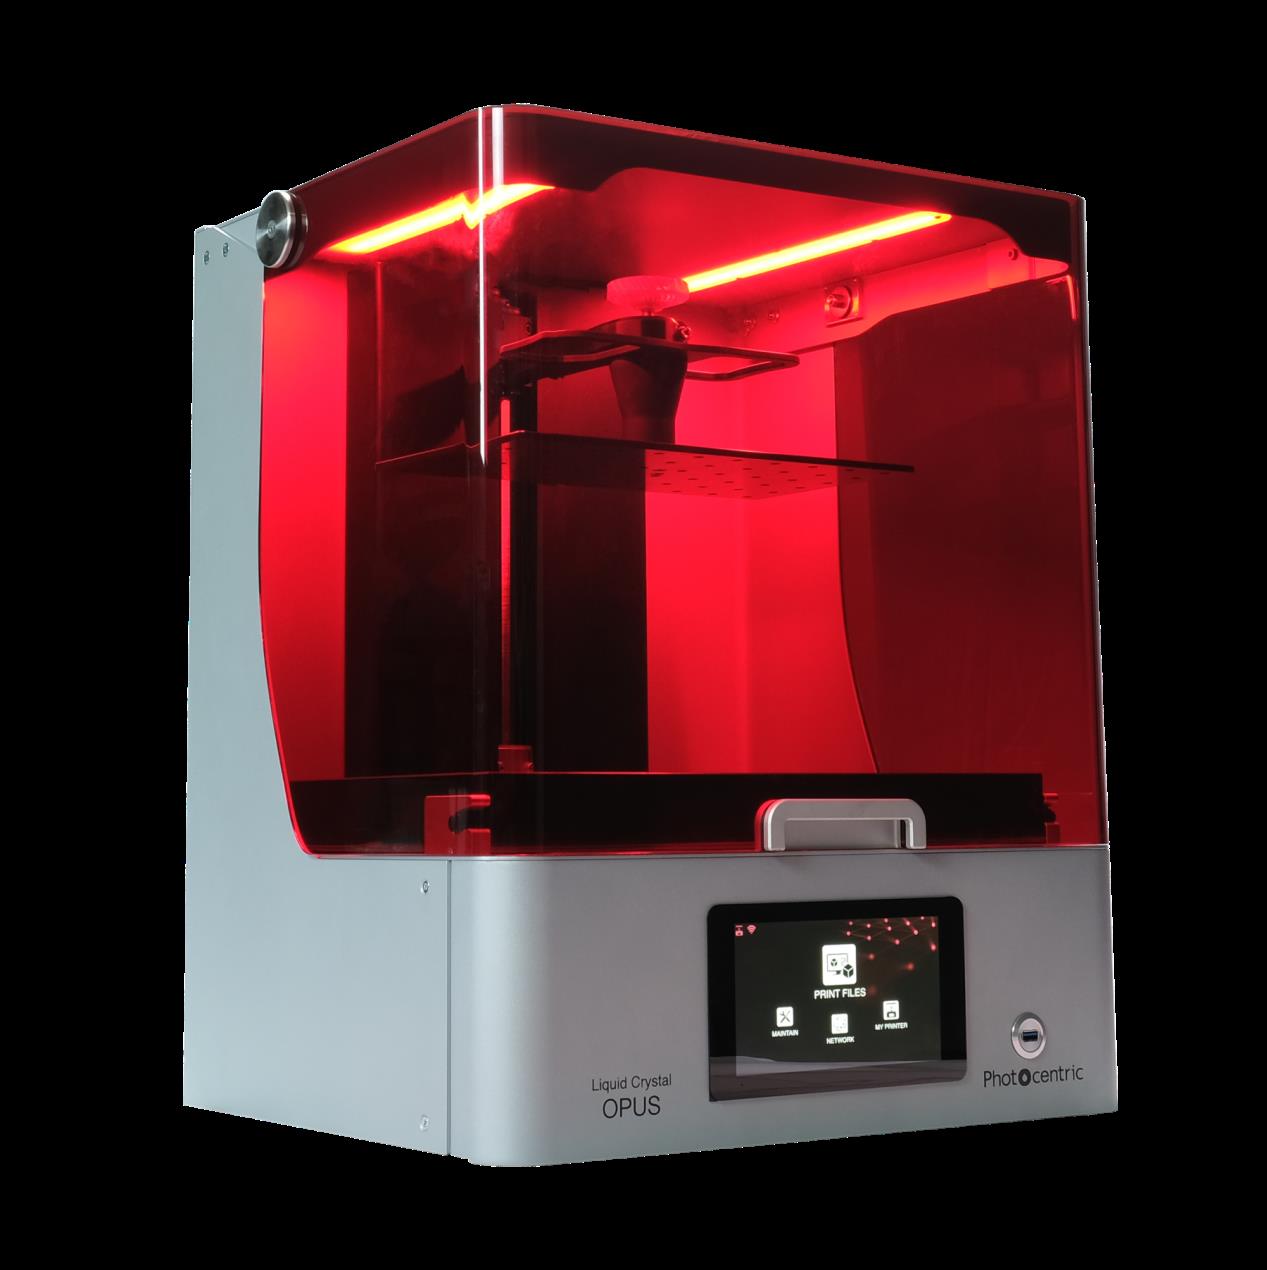 LC Opus是Photocentric公司迄今为止最快的液晶3D打印机。通过Photocentric照片。